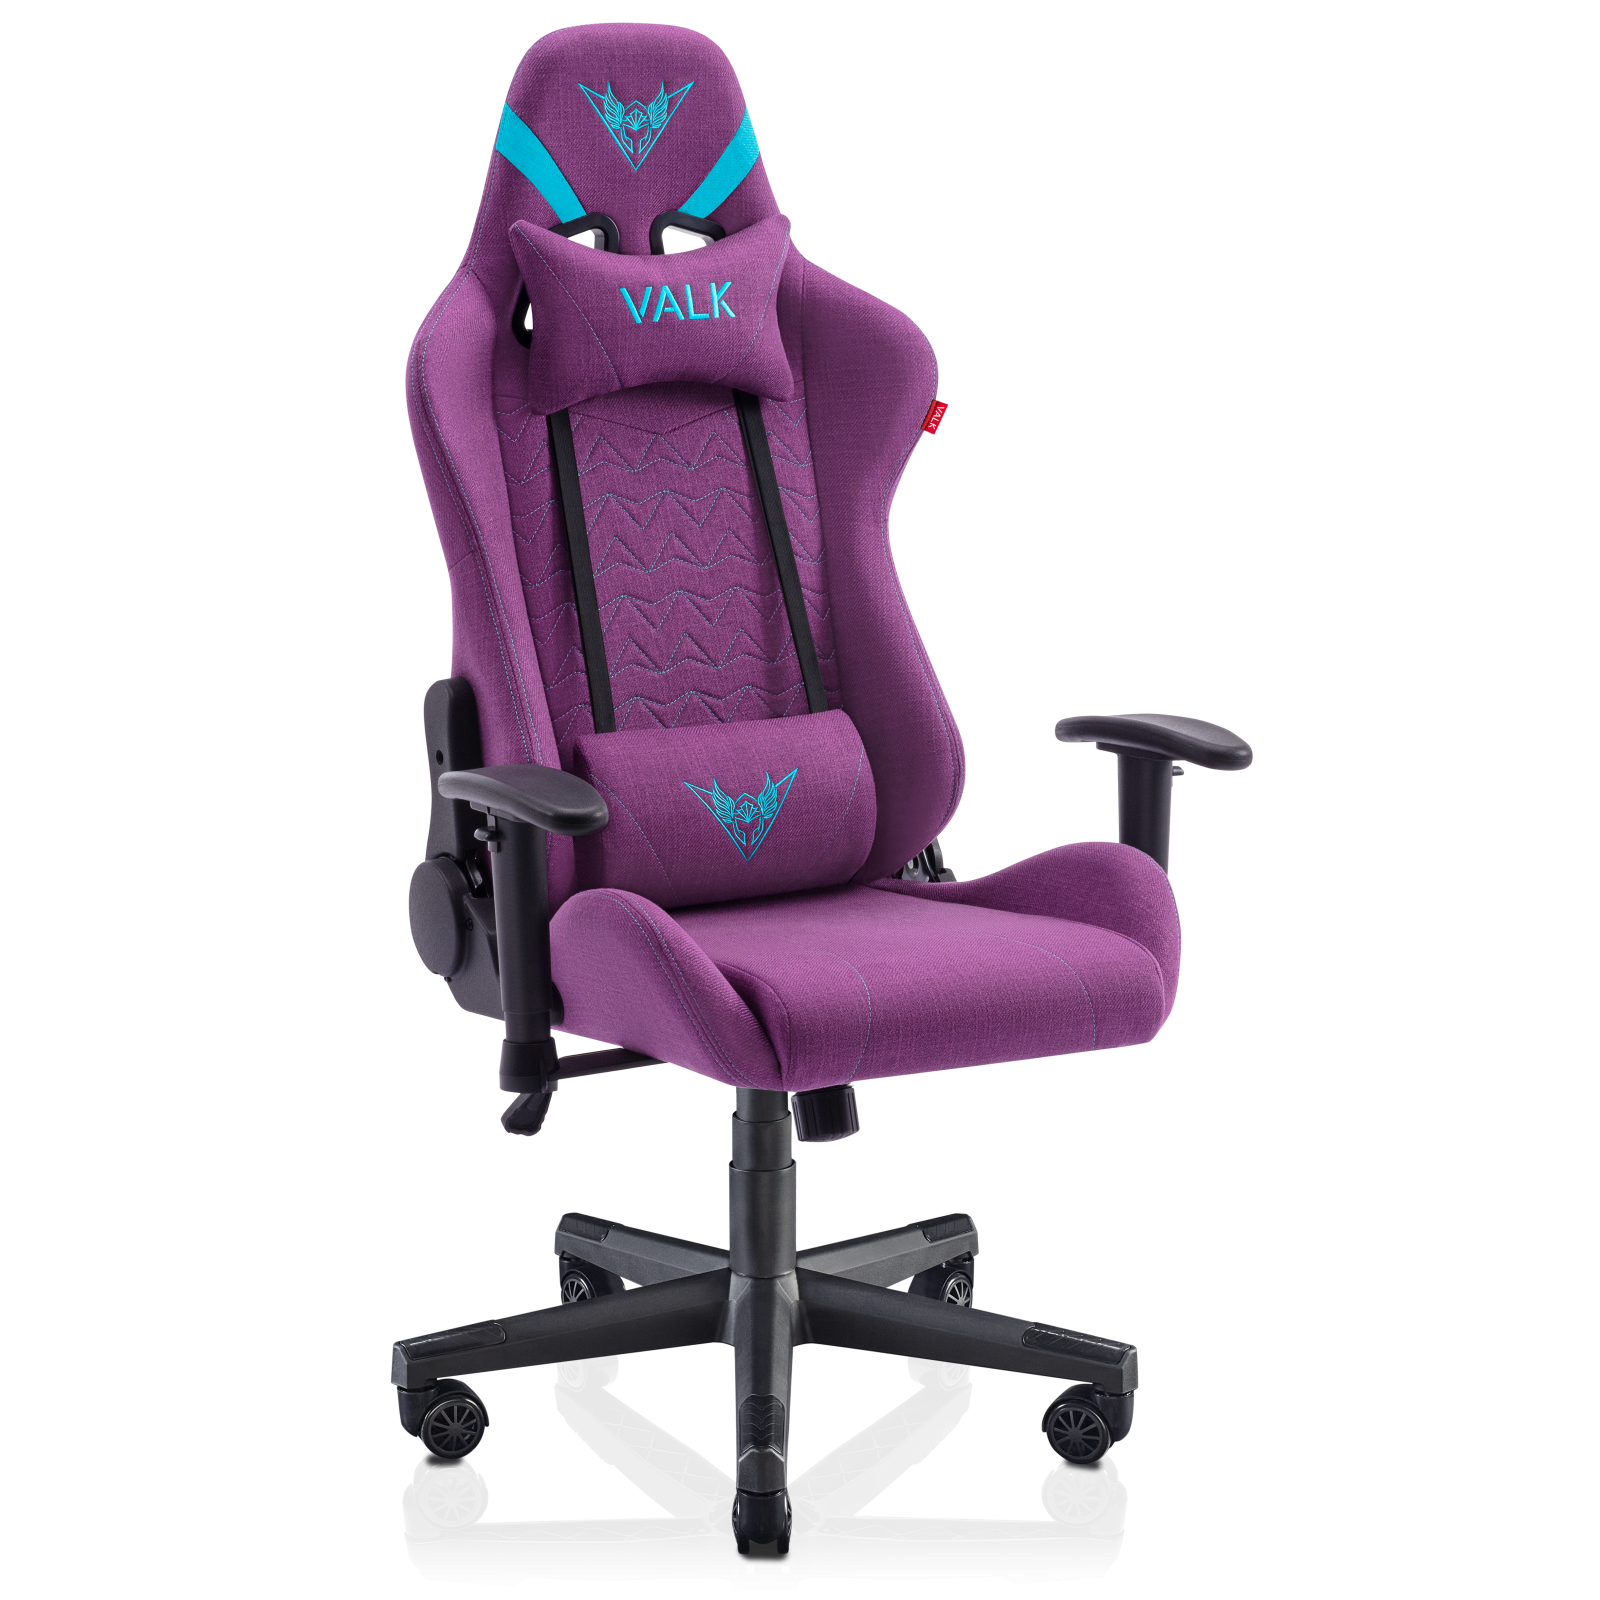 Nuestra mejor silla gaming con soporte lumbar adaptable y ajustable💺